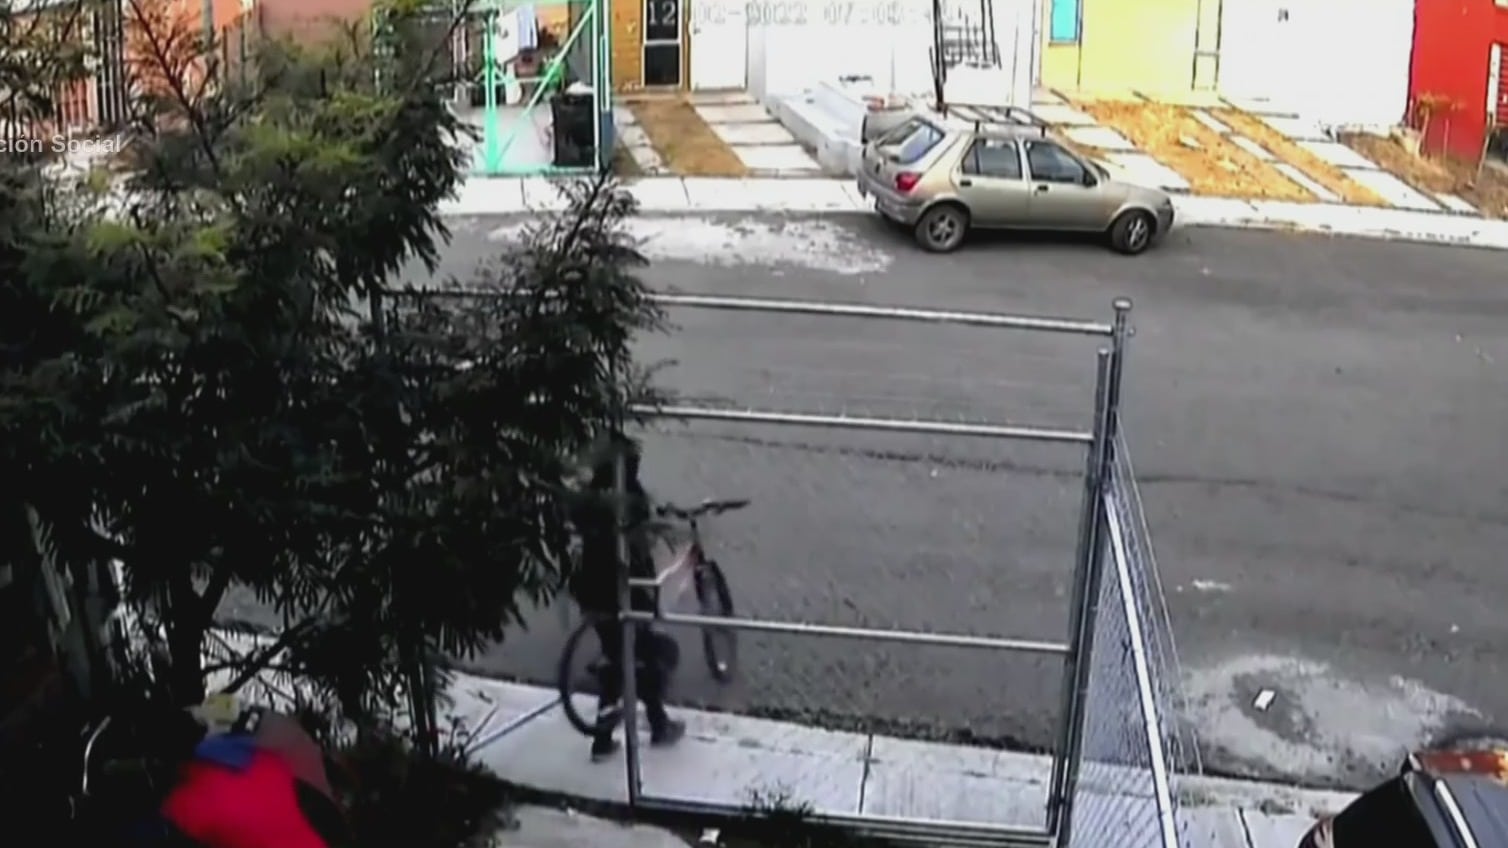 pareja roba bicicletas de casa en morelia michoacan